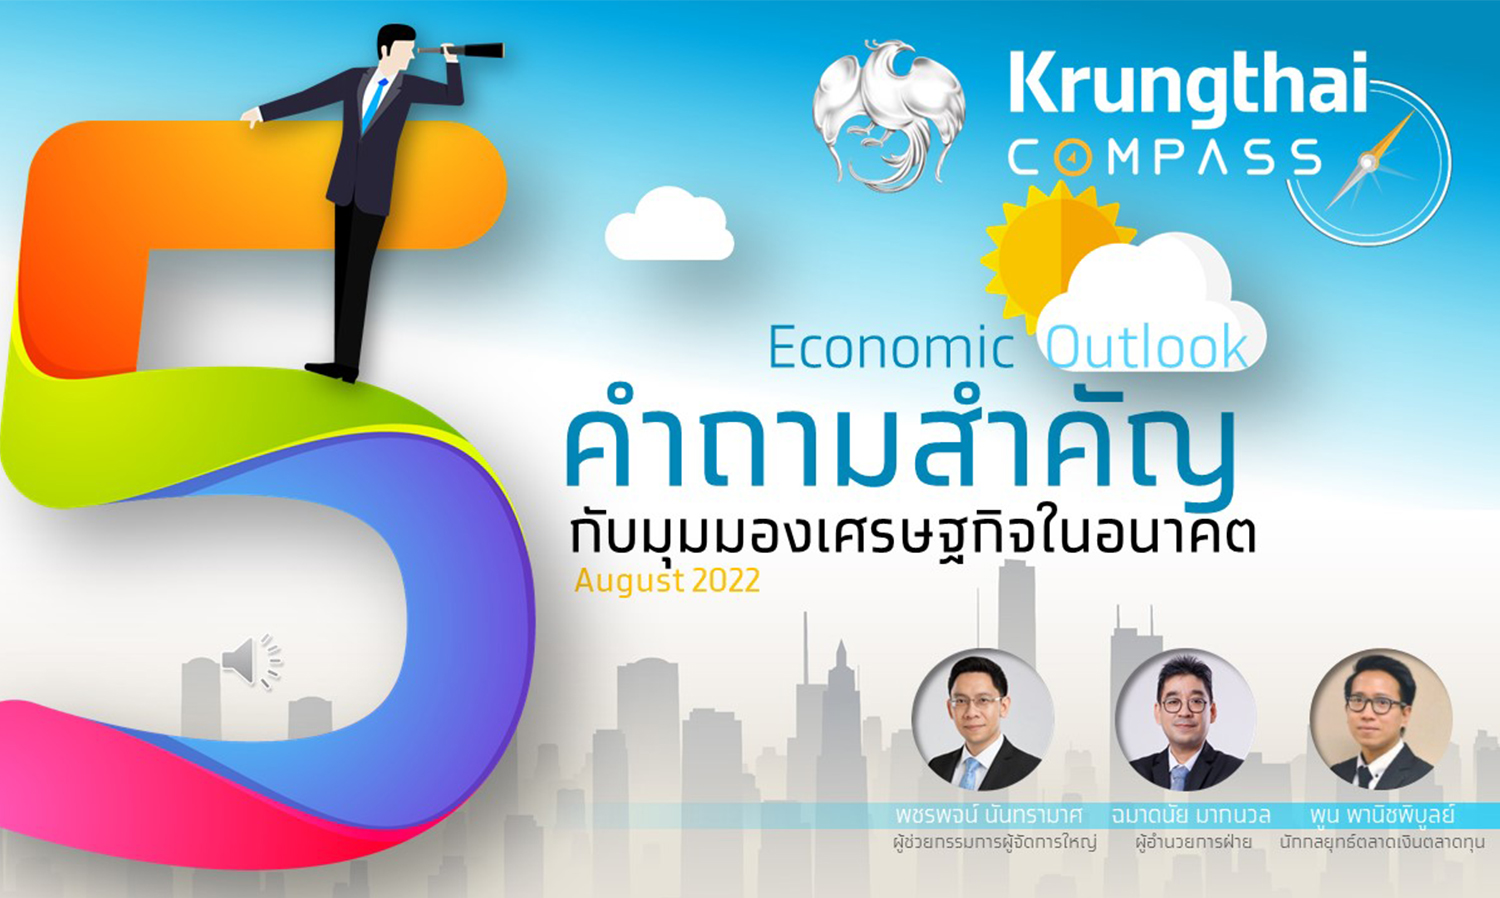 กรุงไทยคาดเศรษฐกิจไทยปีนี้ขยายตัว